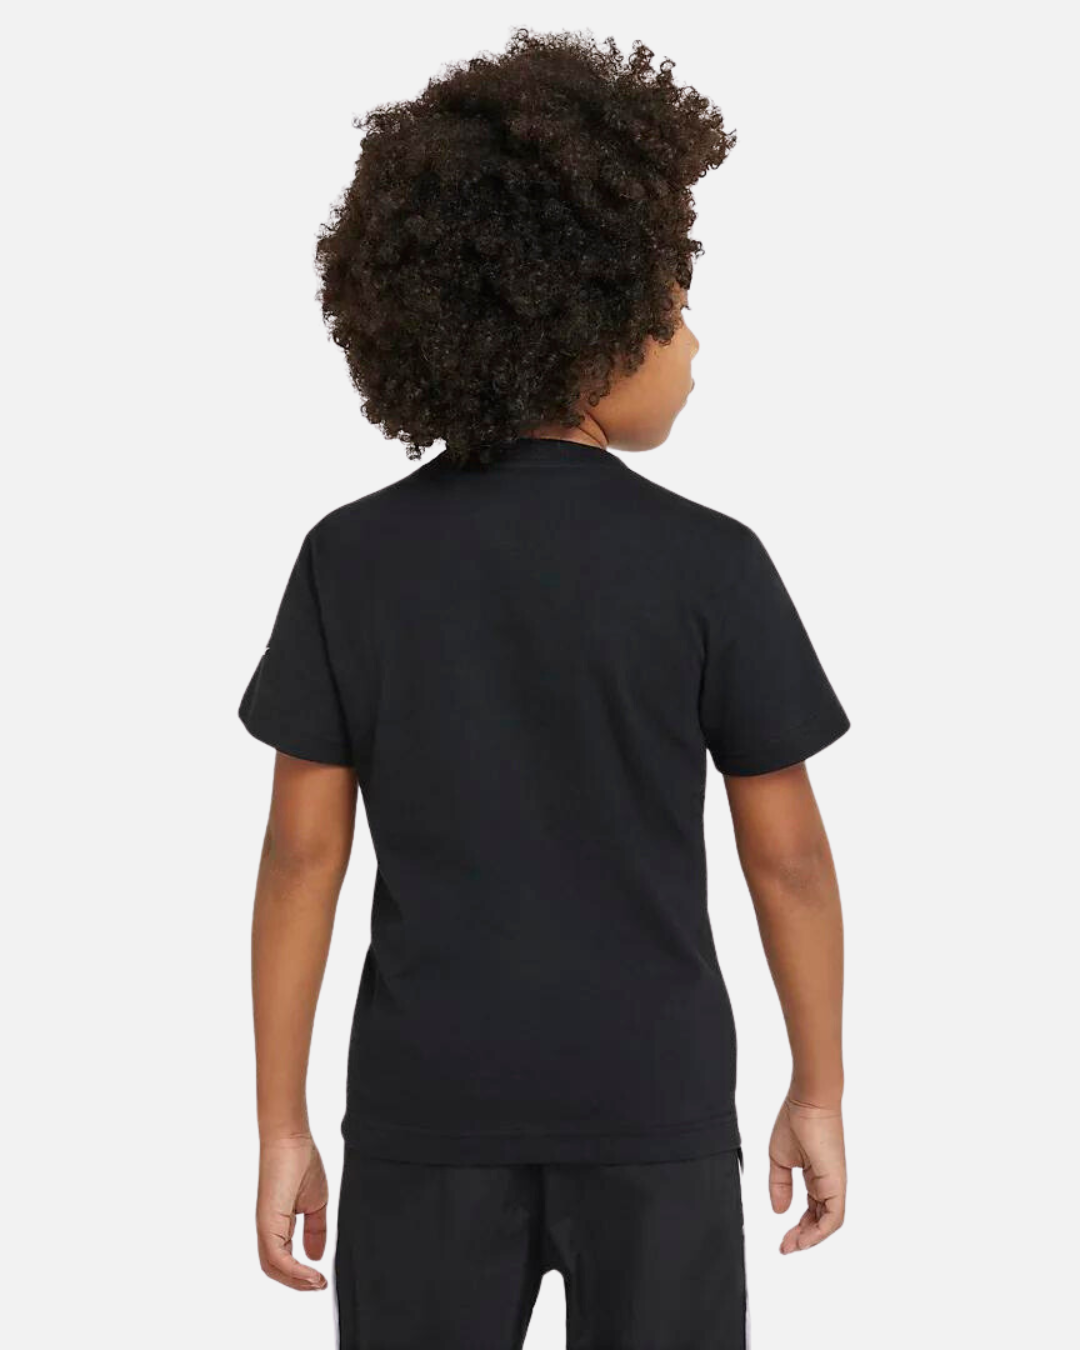 Nike Air Kids T-Shirt - Black